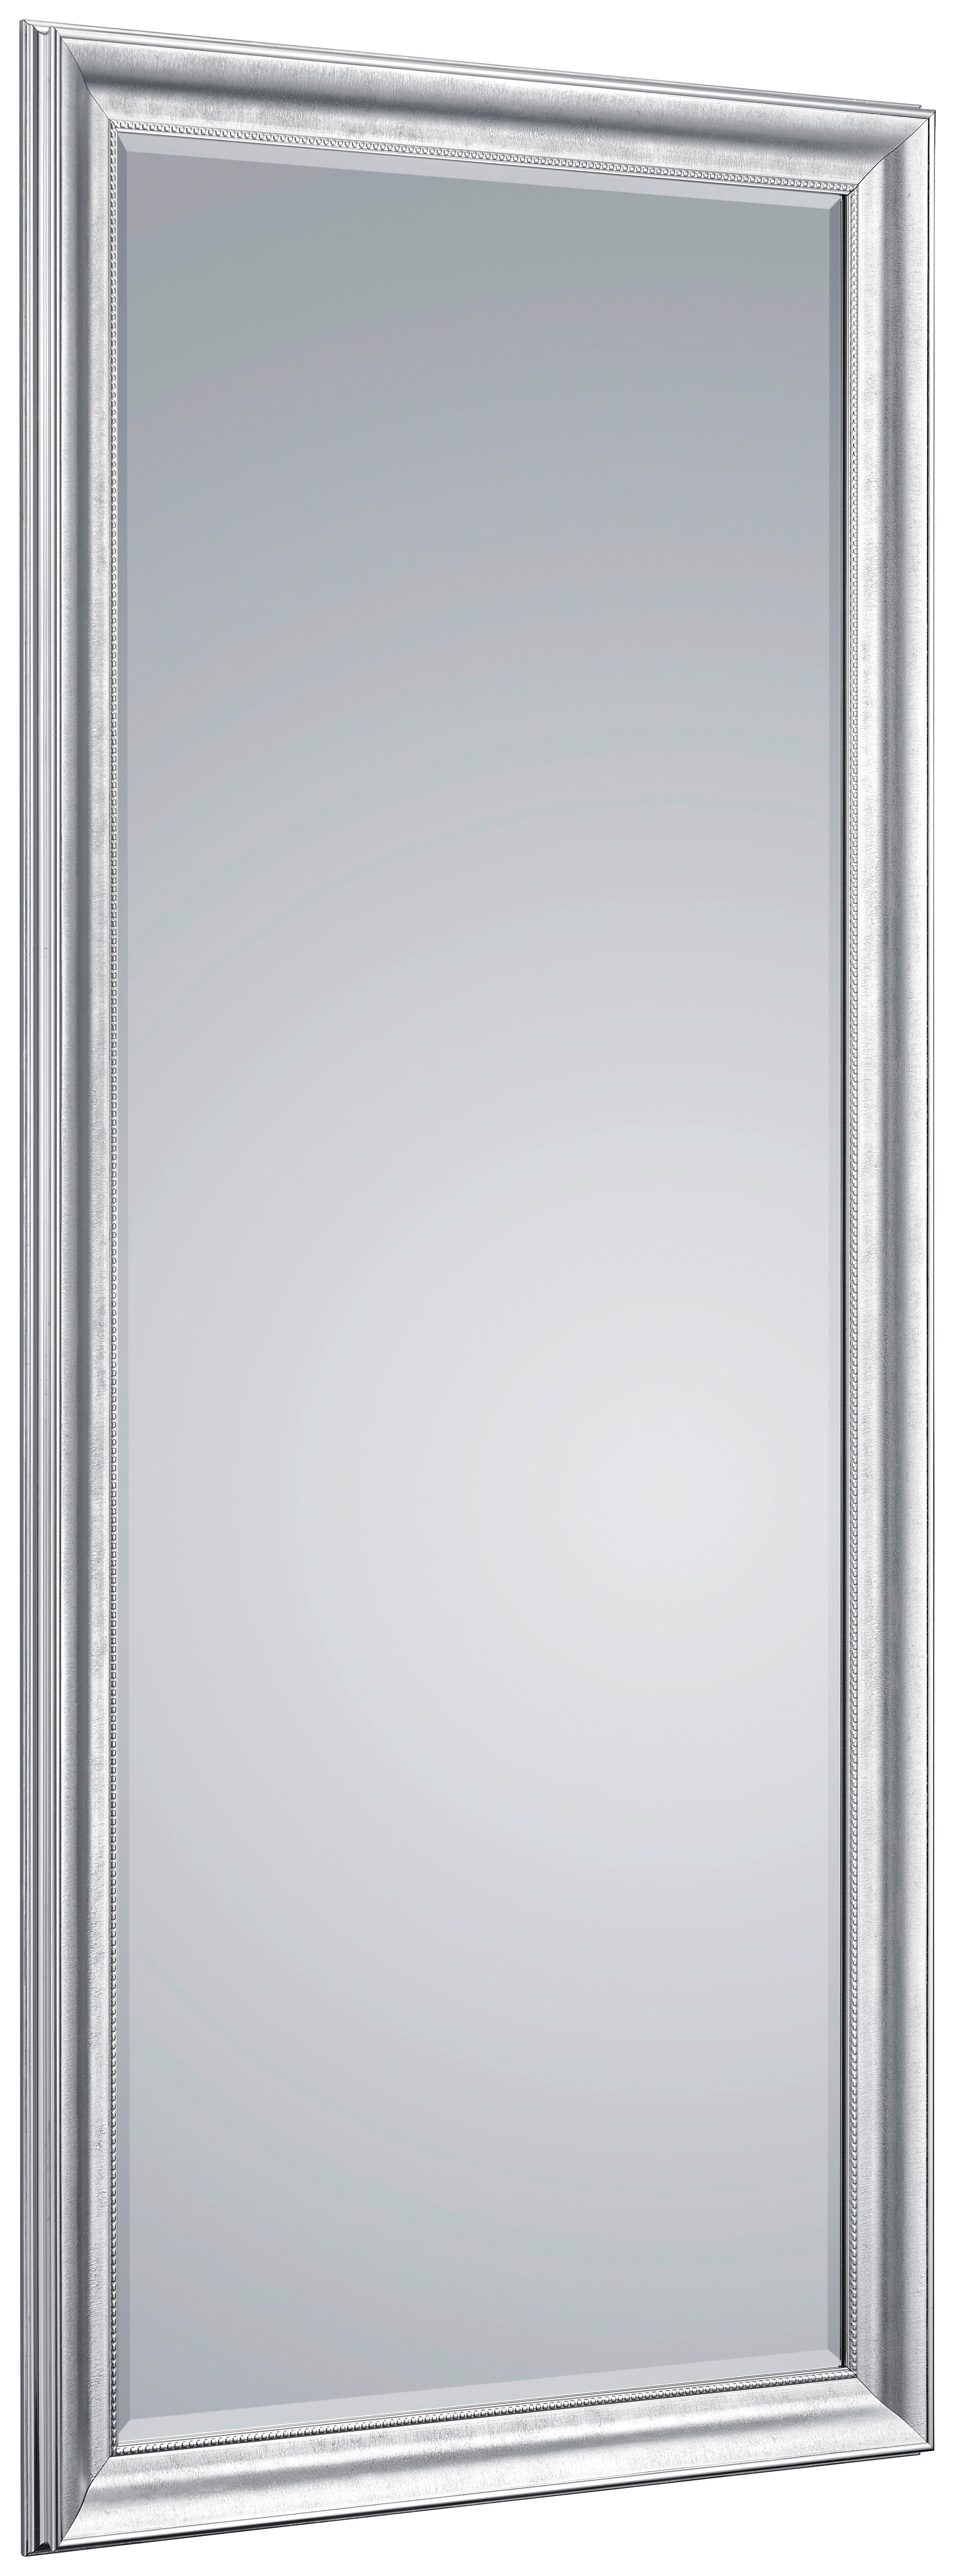 WANDSPIEGEL 80/180/4 cm    - Chromfarben, KONVENTIONELL, Glas/Kunststoff (80/180/4cm)